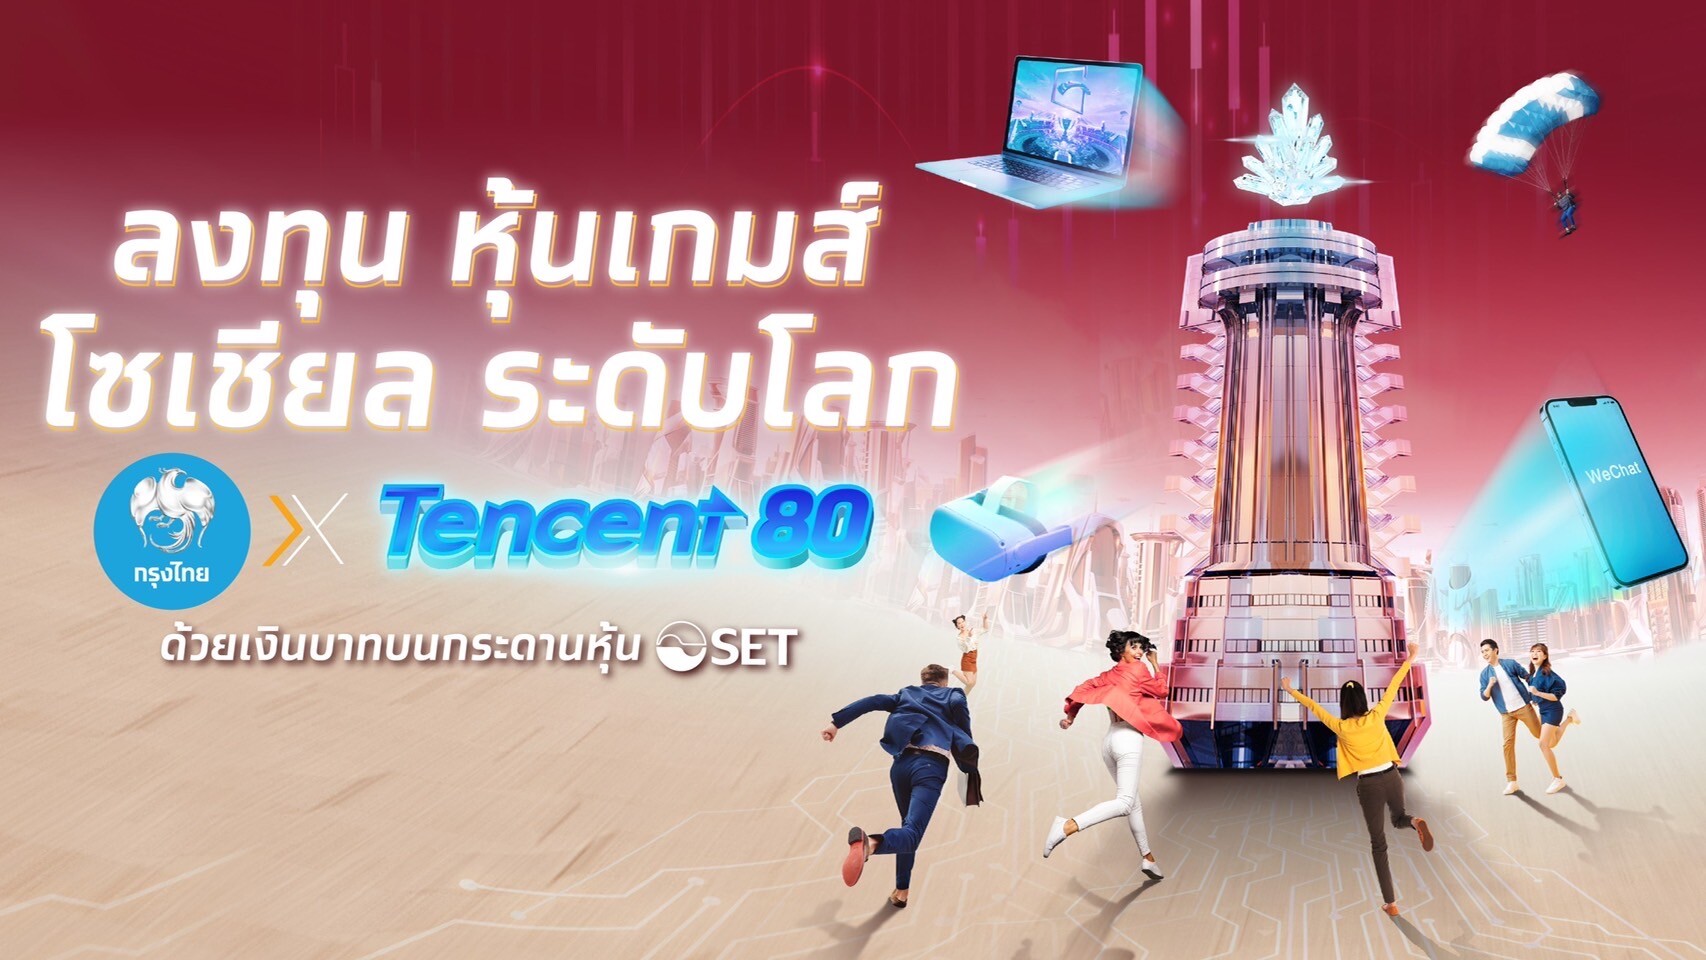 กรุงไทย พร้อมเทรดหุ้น DR เทคฯยักษ์ใหญ่จากจีน "TENCENT80" ดีเดย์ 26 เม.ย. นี้